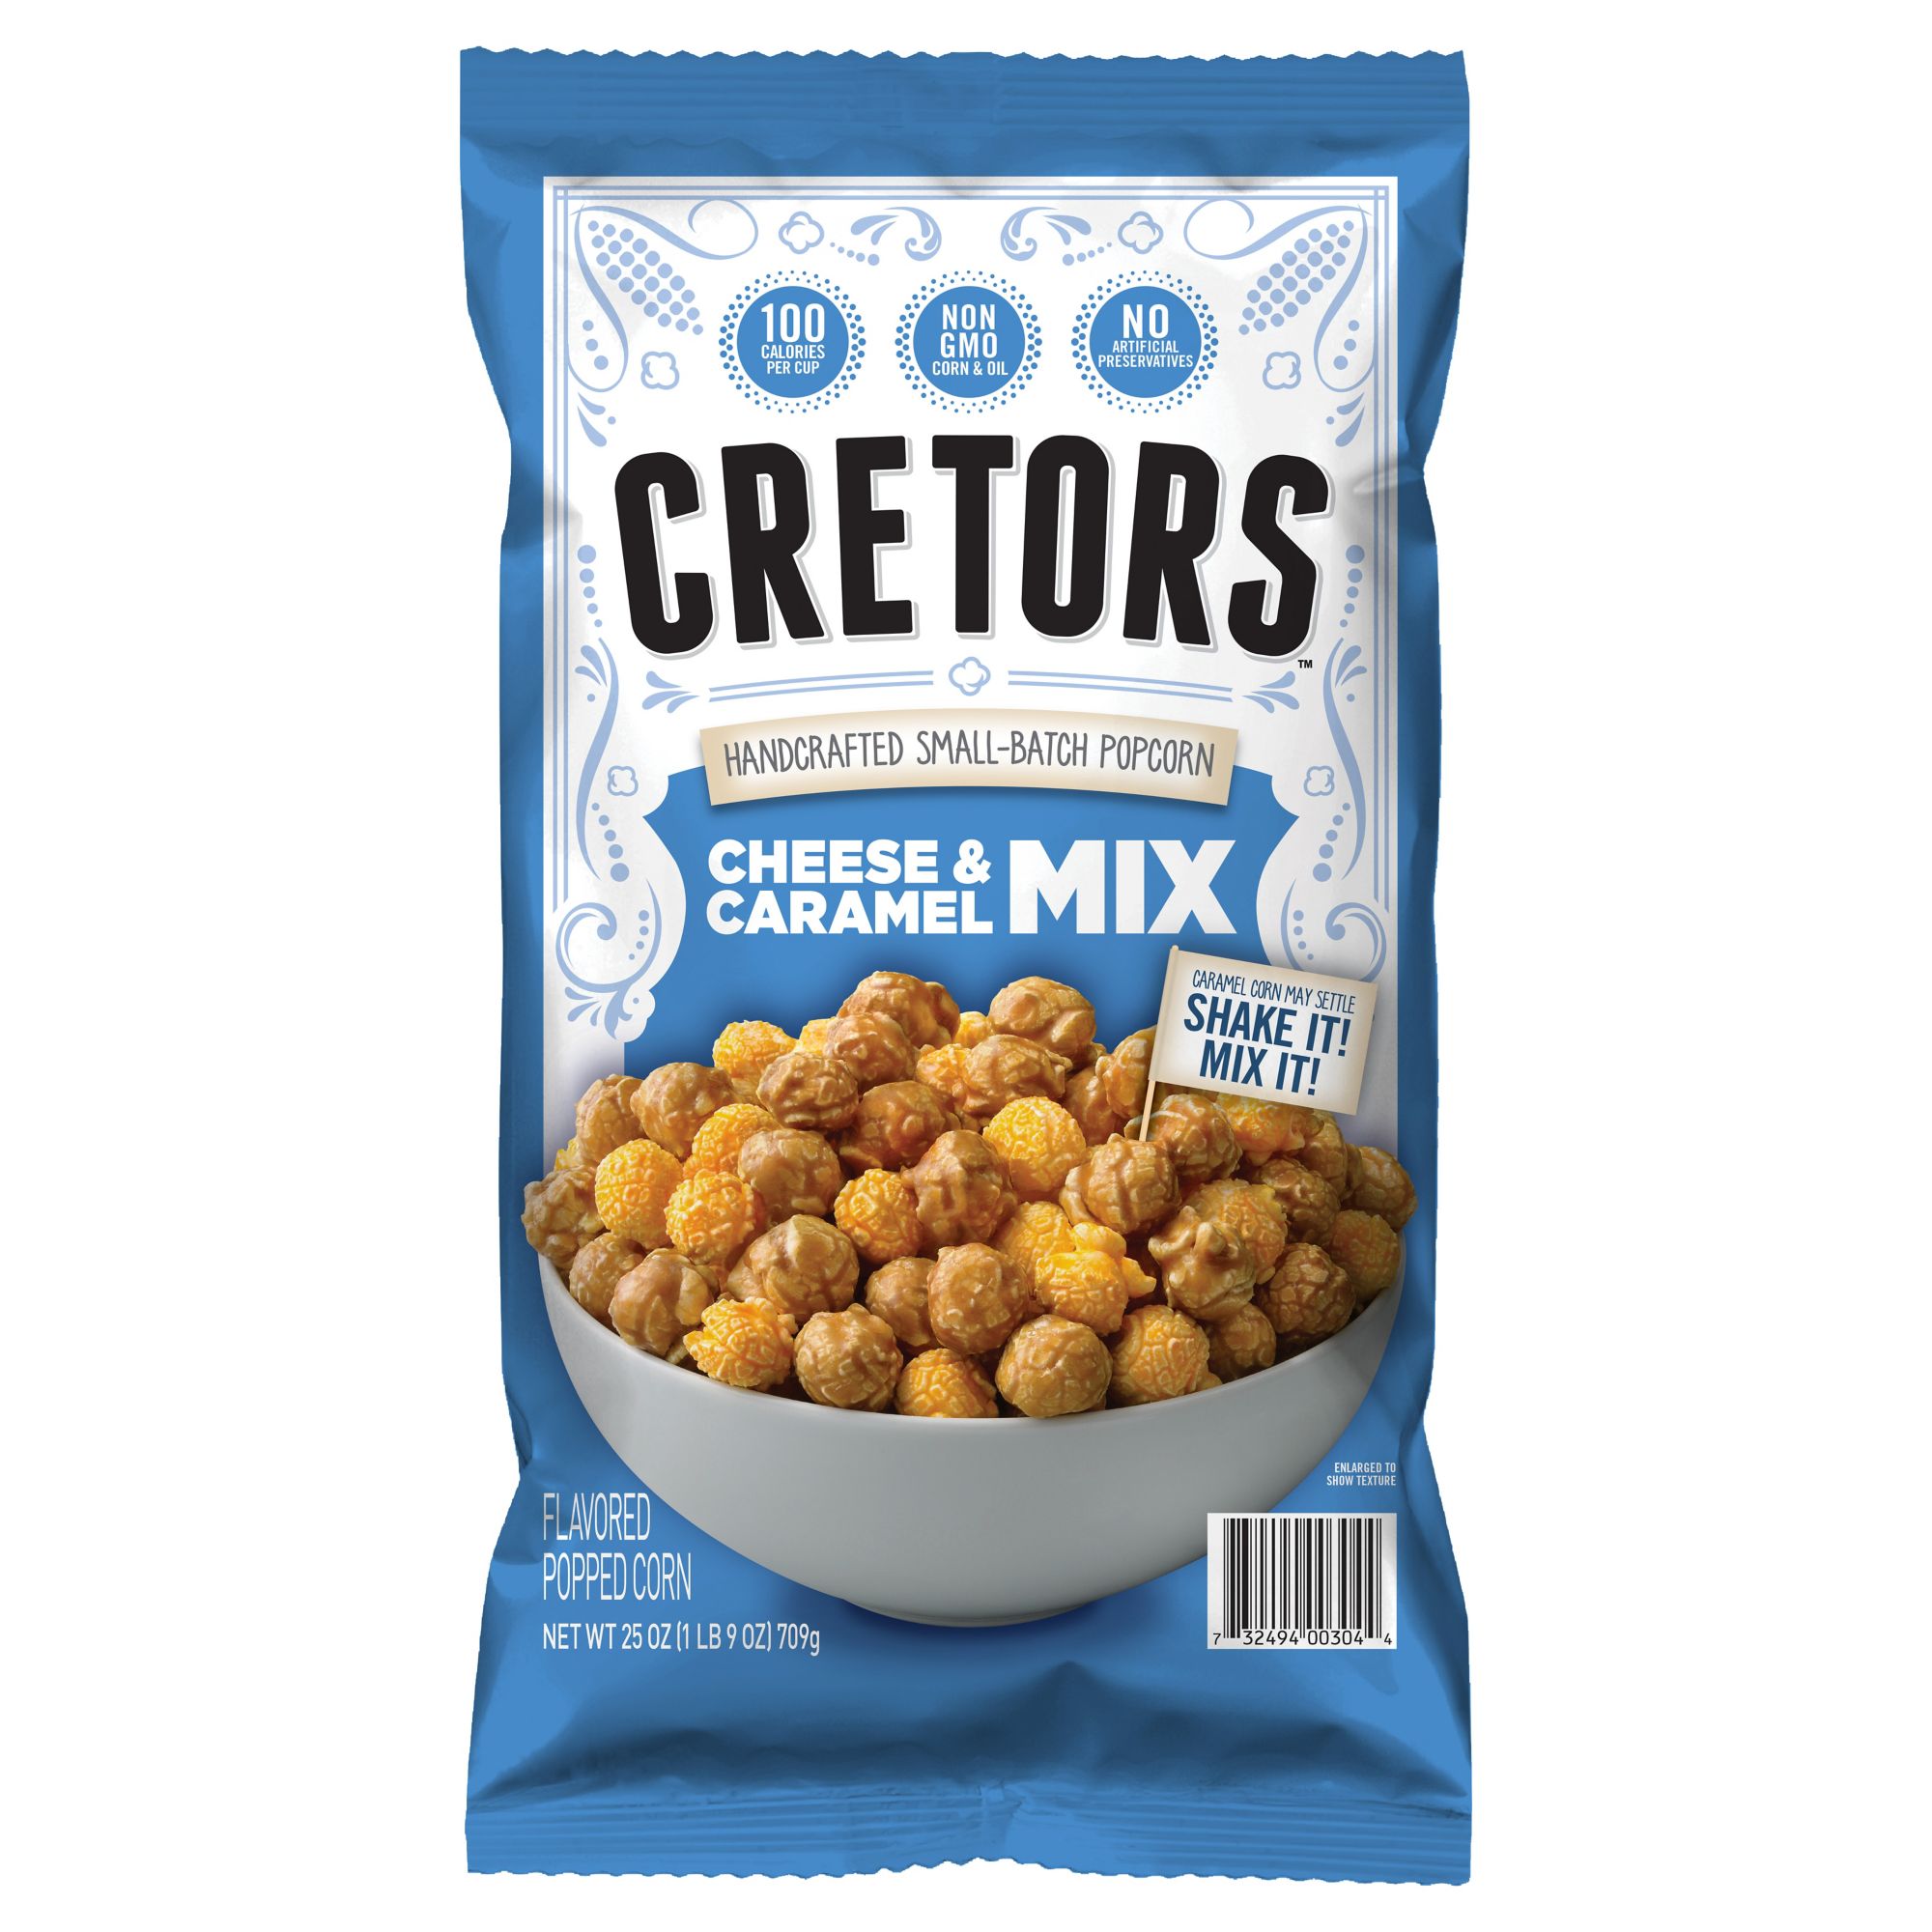 Cretors Cheese & Caramel Mix, 25 oz.